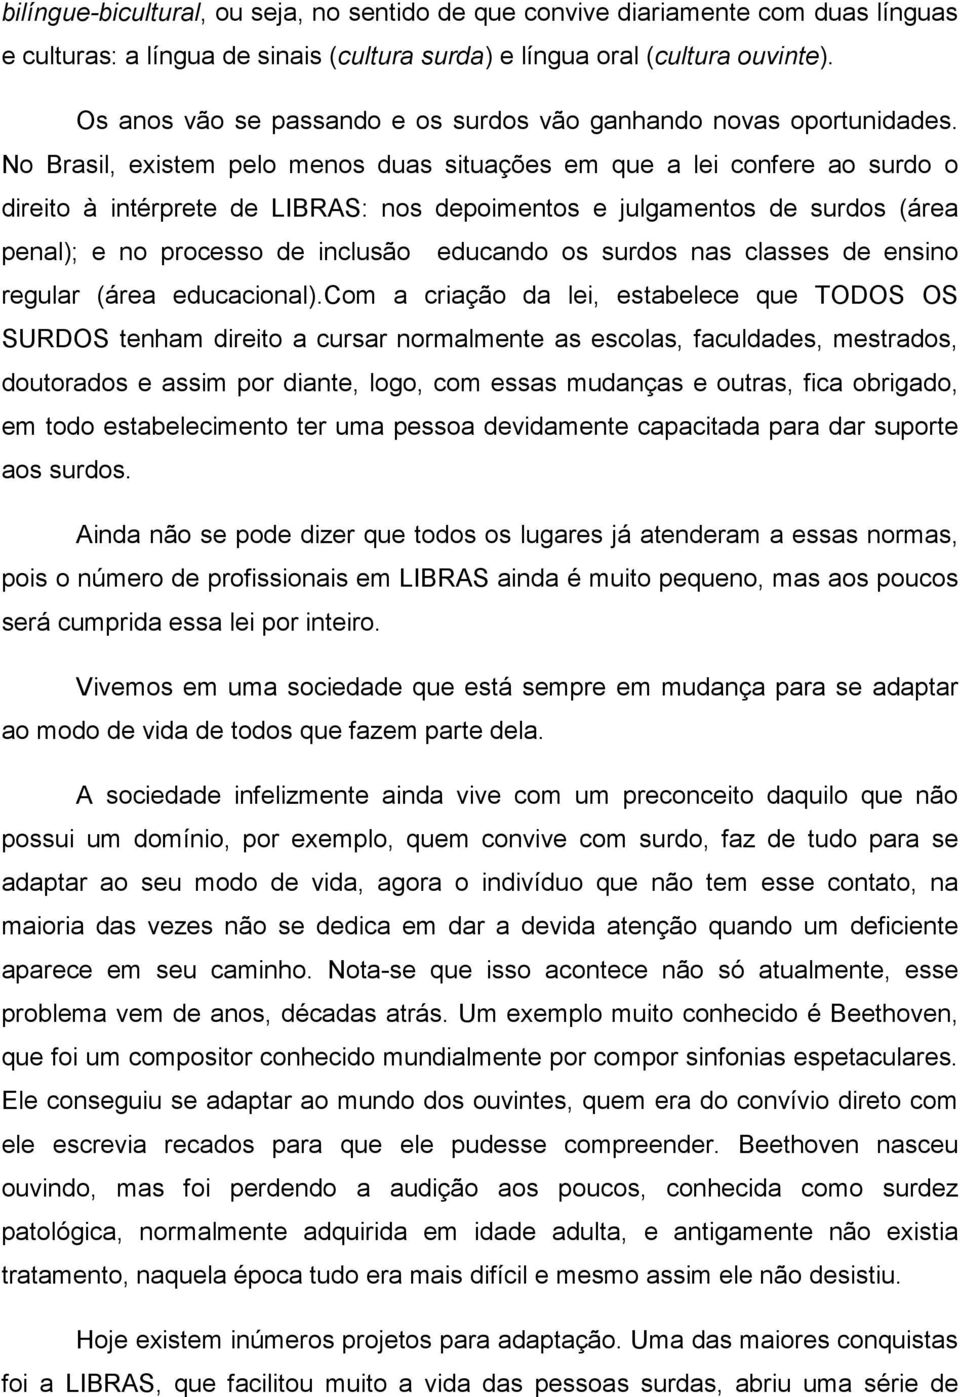 No Brasil, existem pelo menos duas situações em que a lei confere ao surdo o direito à intérprete de LIBRAS: nos depoimentos e julgamentos de surdos (área penal); e no processo de inclusão educando